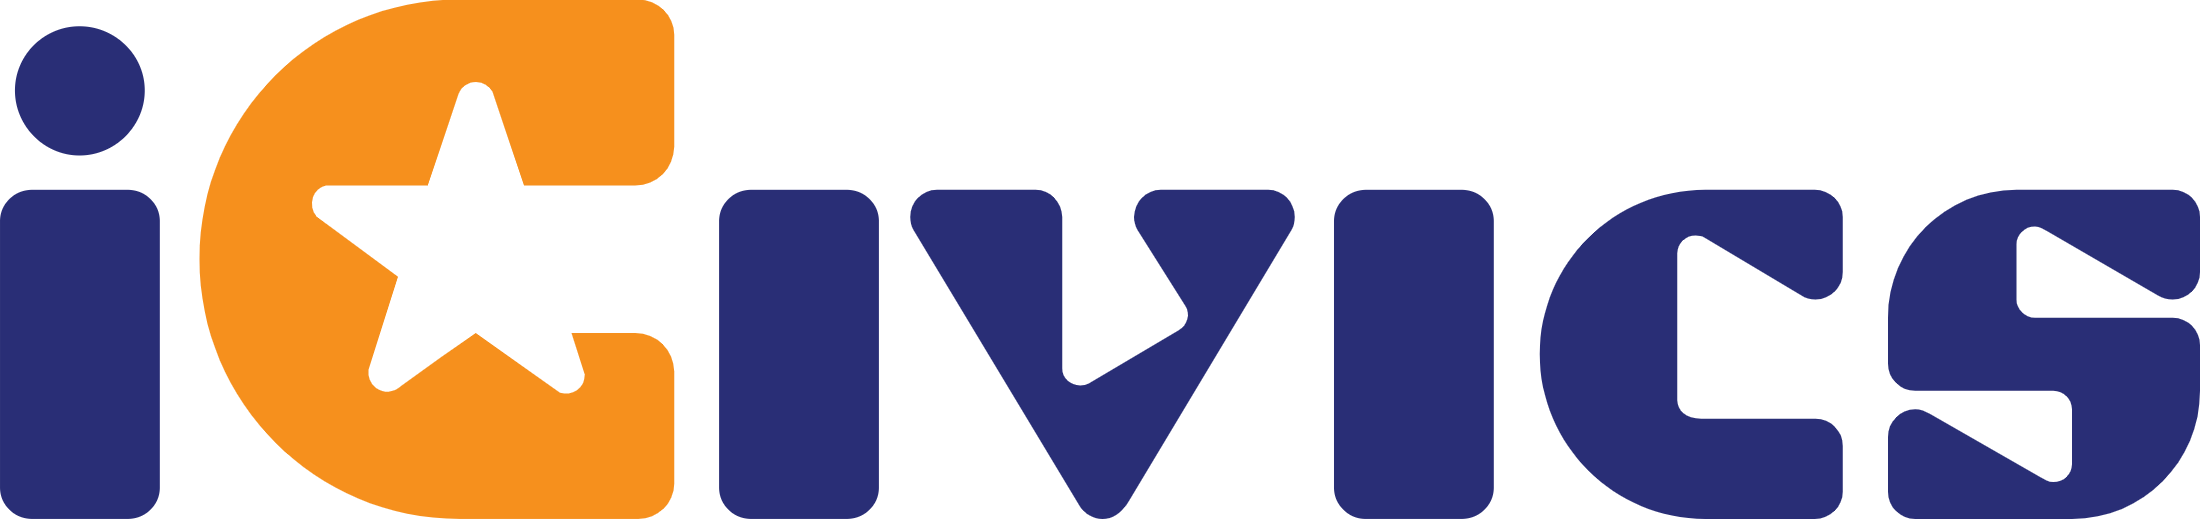 Logo de iCivics Inc.